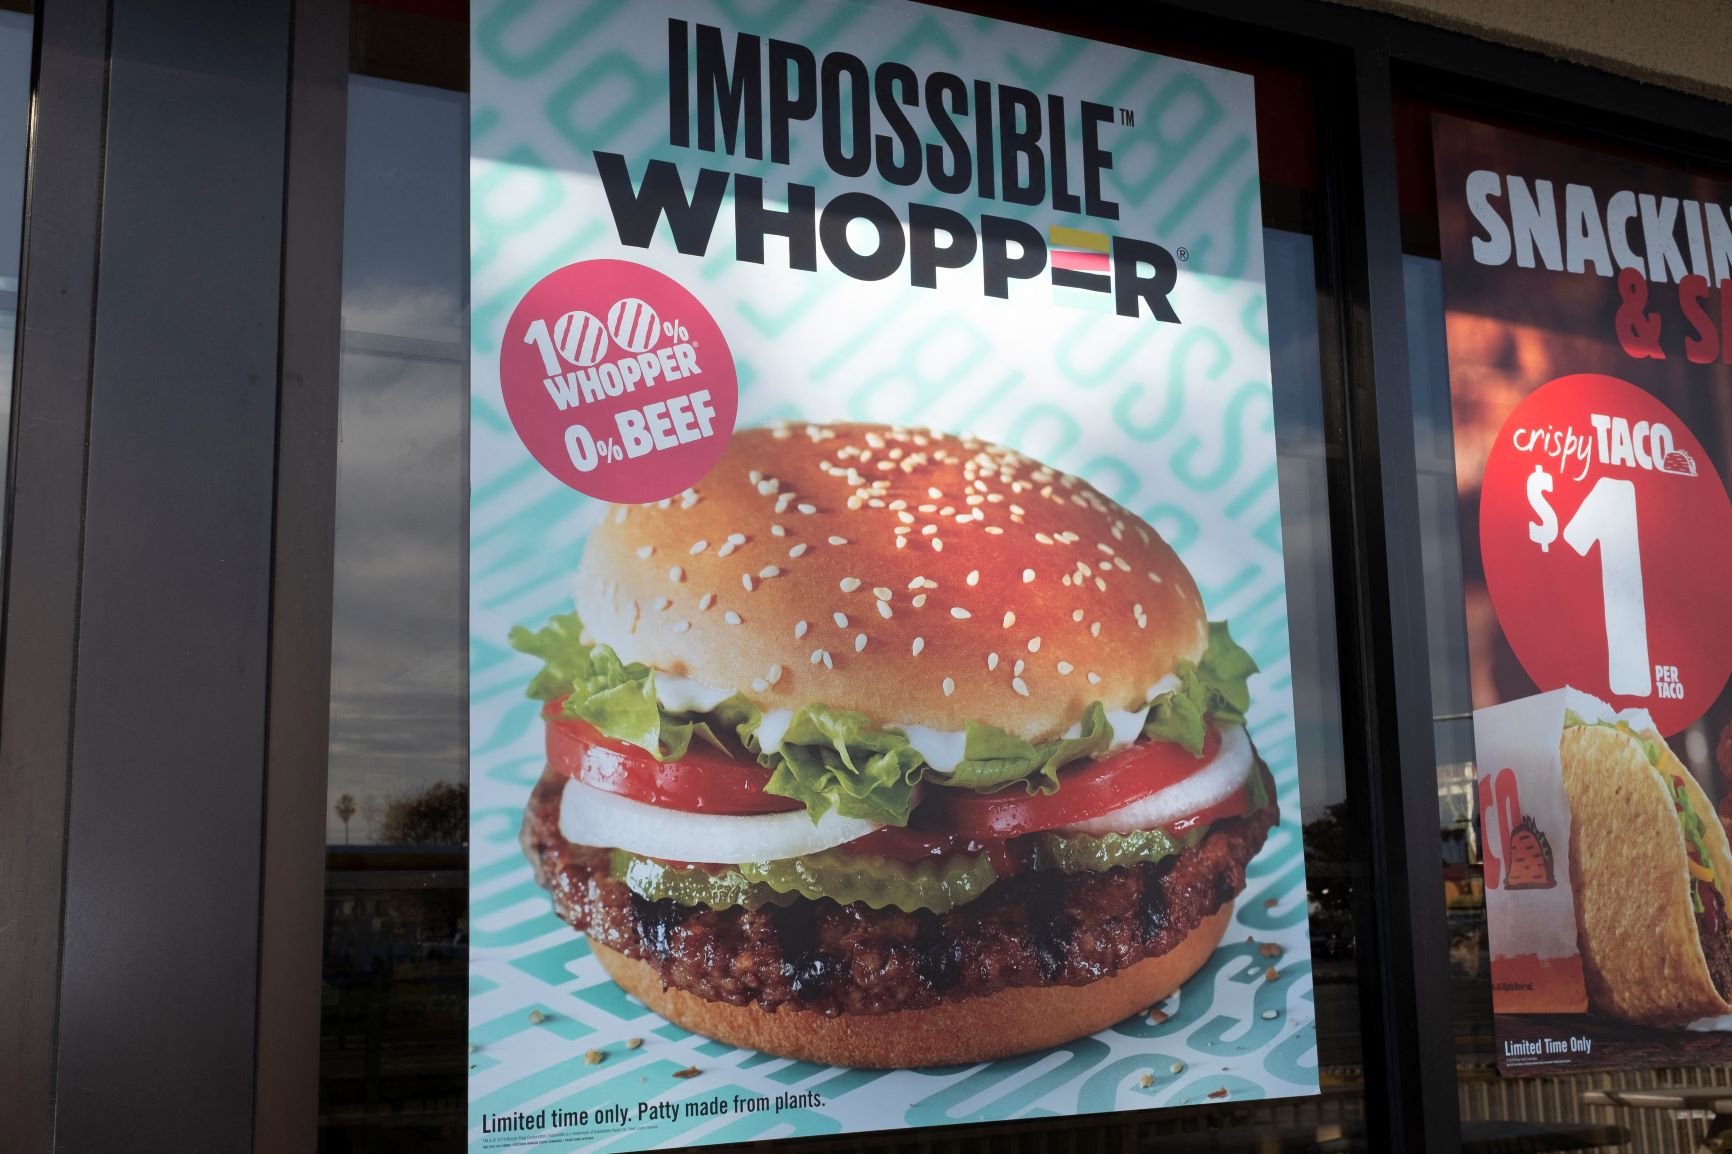 Anúncio na Califórnia de tradicional sanduíche da rede Burger King, sem carne e plant based: indústria de alimentos aposta no marketing de produtos vendidos como saudáveis e sustentáveis (Foto: Yichuan Cao/NurPhoto/AFP - 20/11/2019)